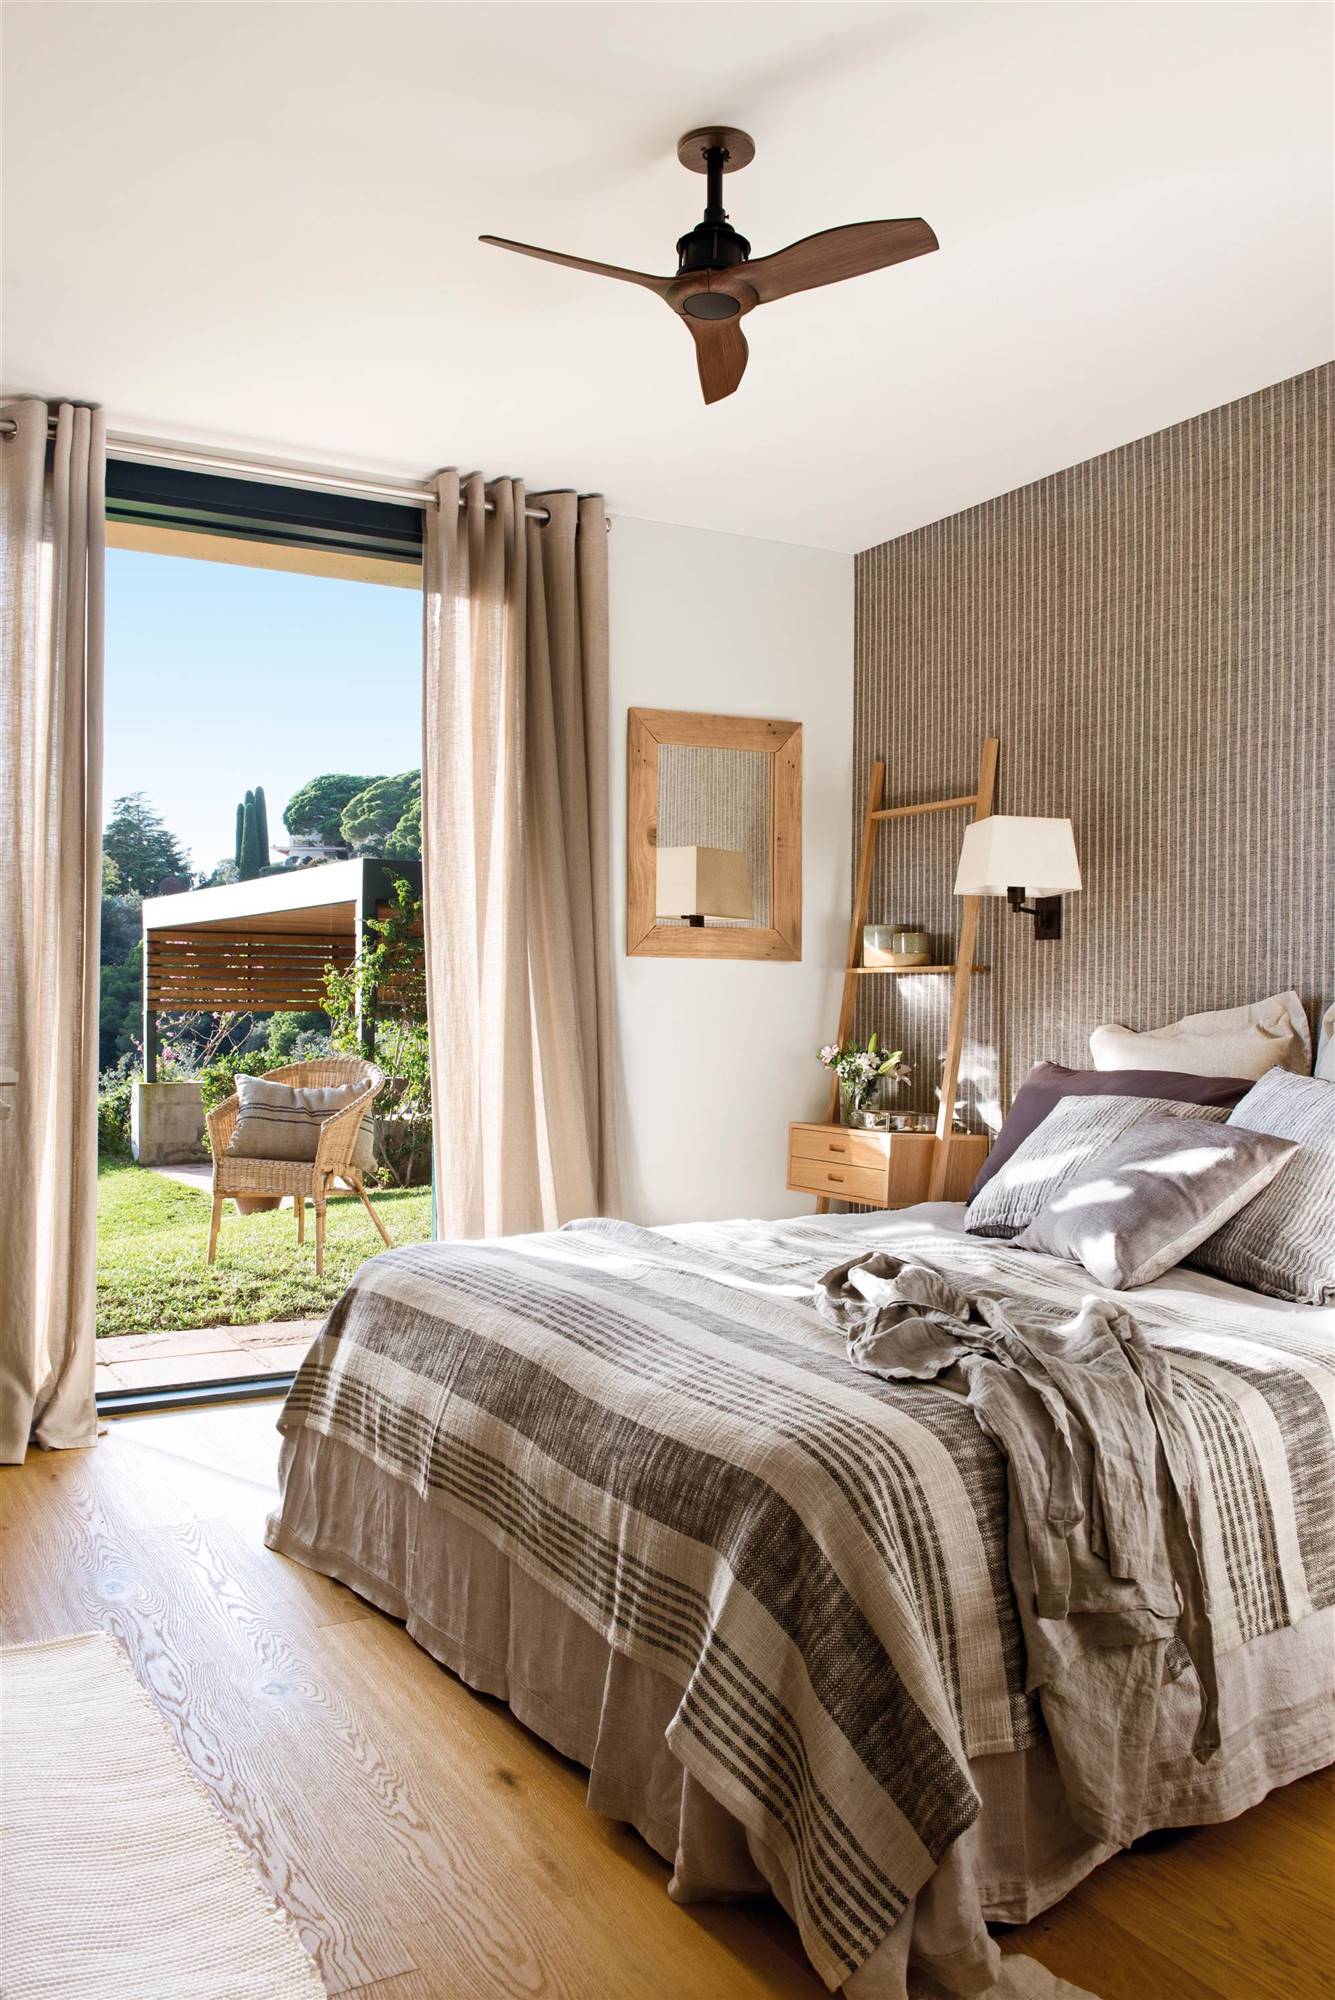 Dormitorio de verano con ventilador de techo y ropa de cama étnica en blanco y gris. 